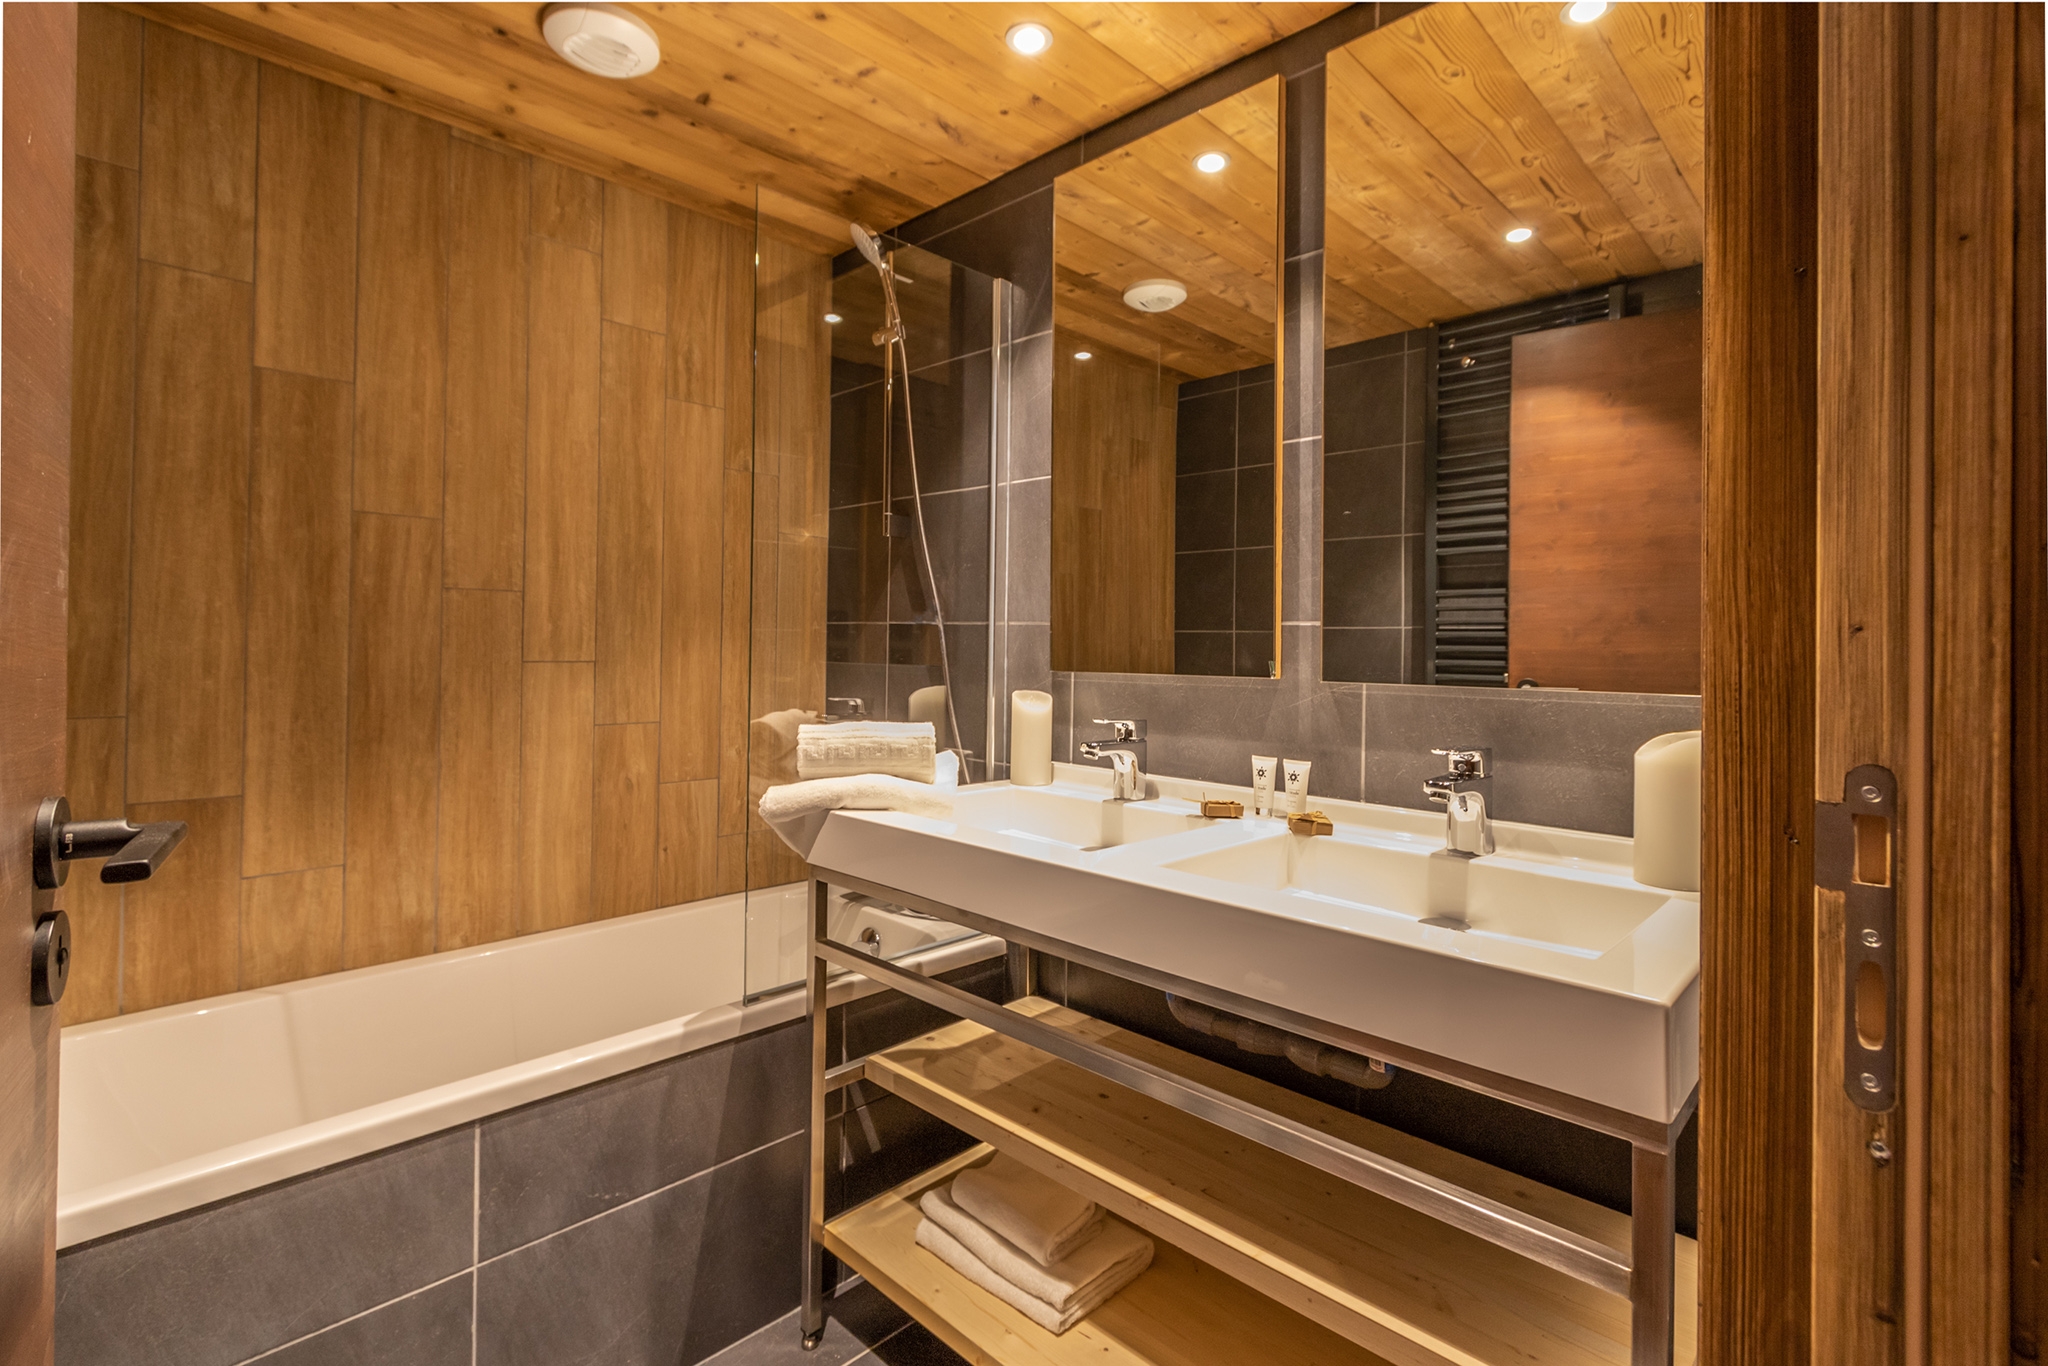 Chalet Altitude: Appartement für 8 Personen - Bad (Beispiel)